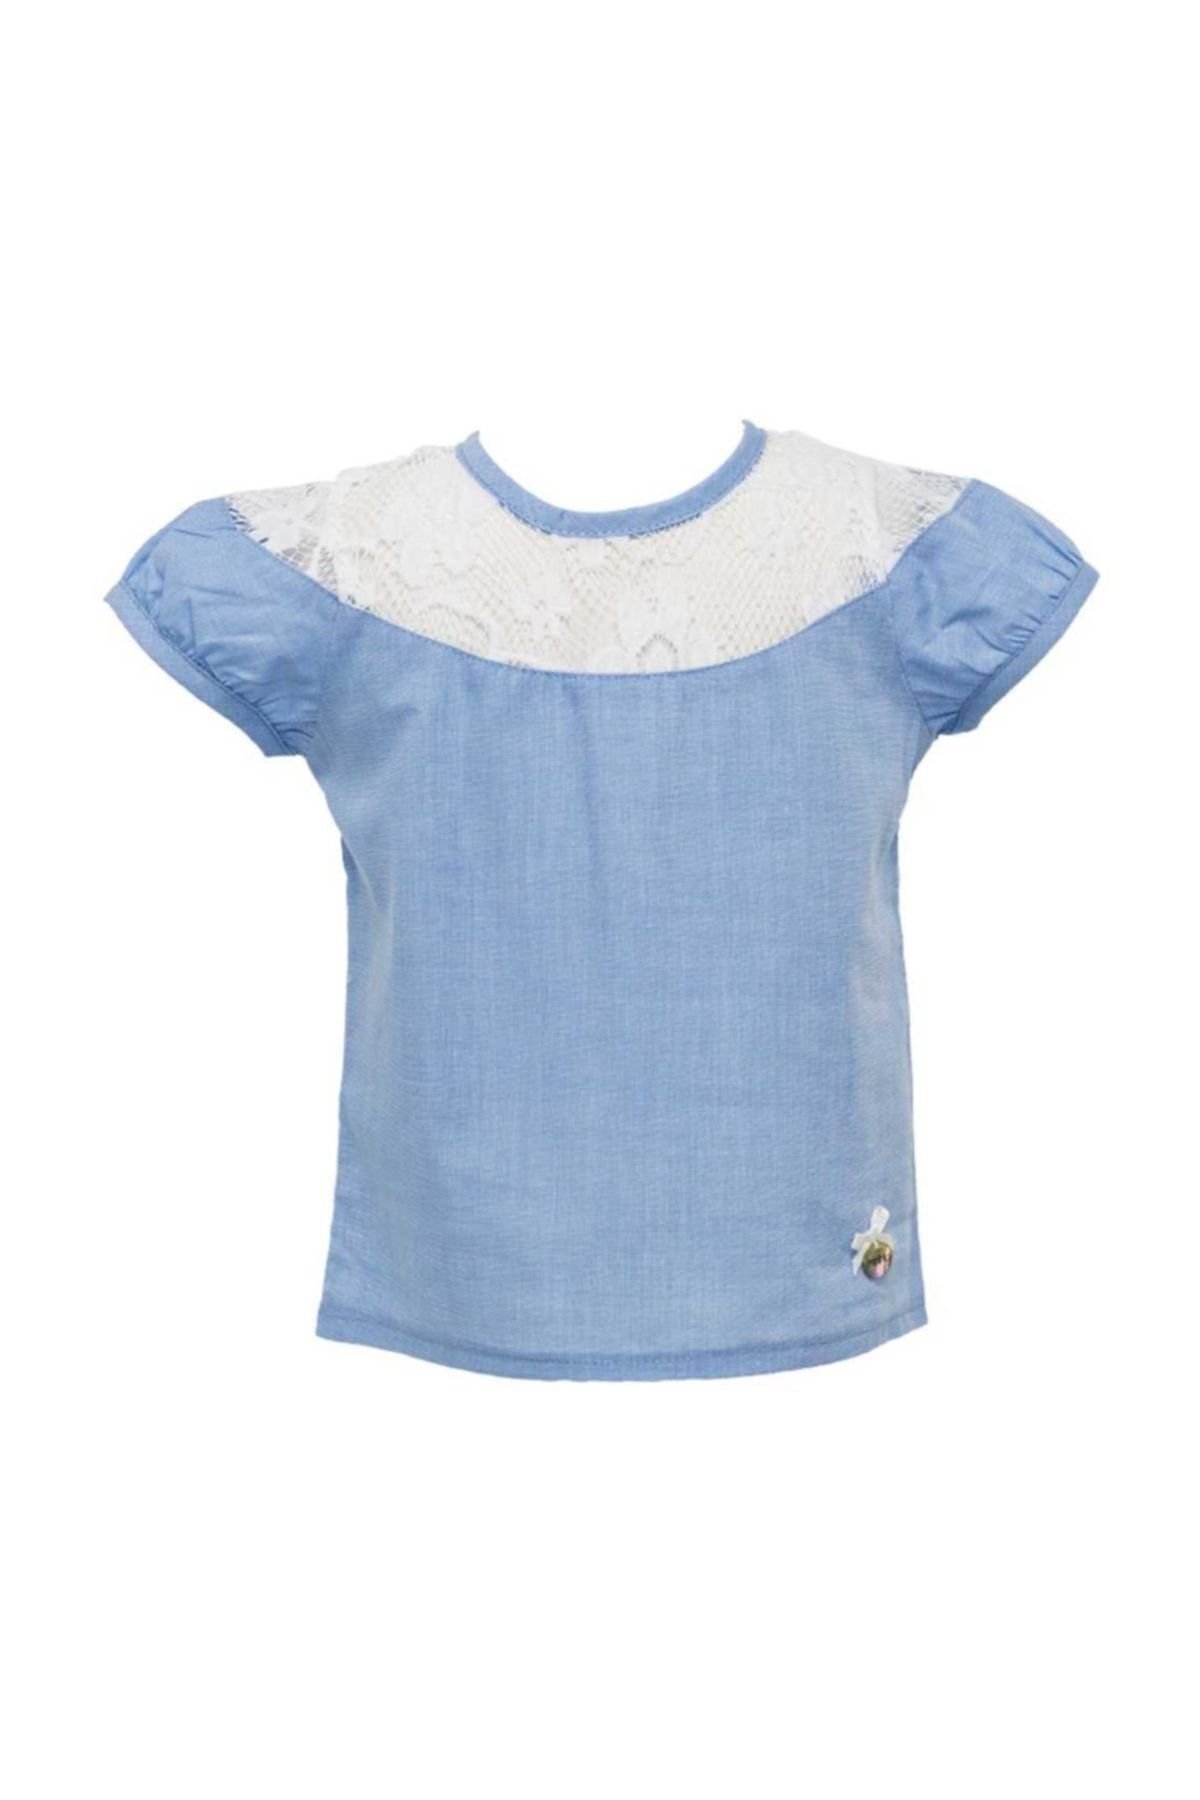 Zeyland Mavi Kız Bebek Gömlek 81m2dfn81